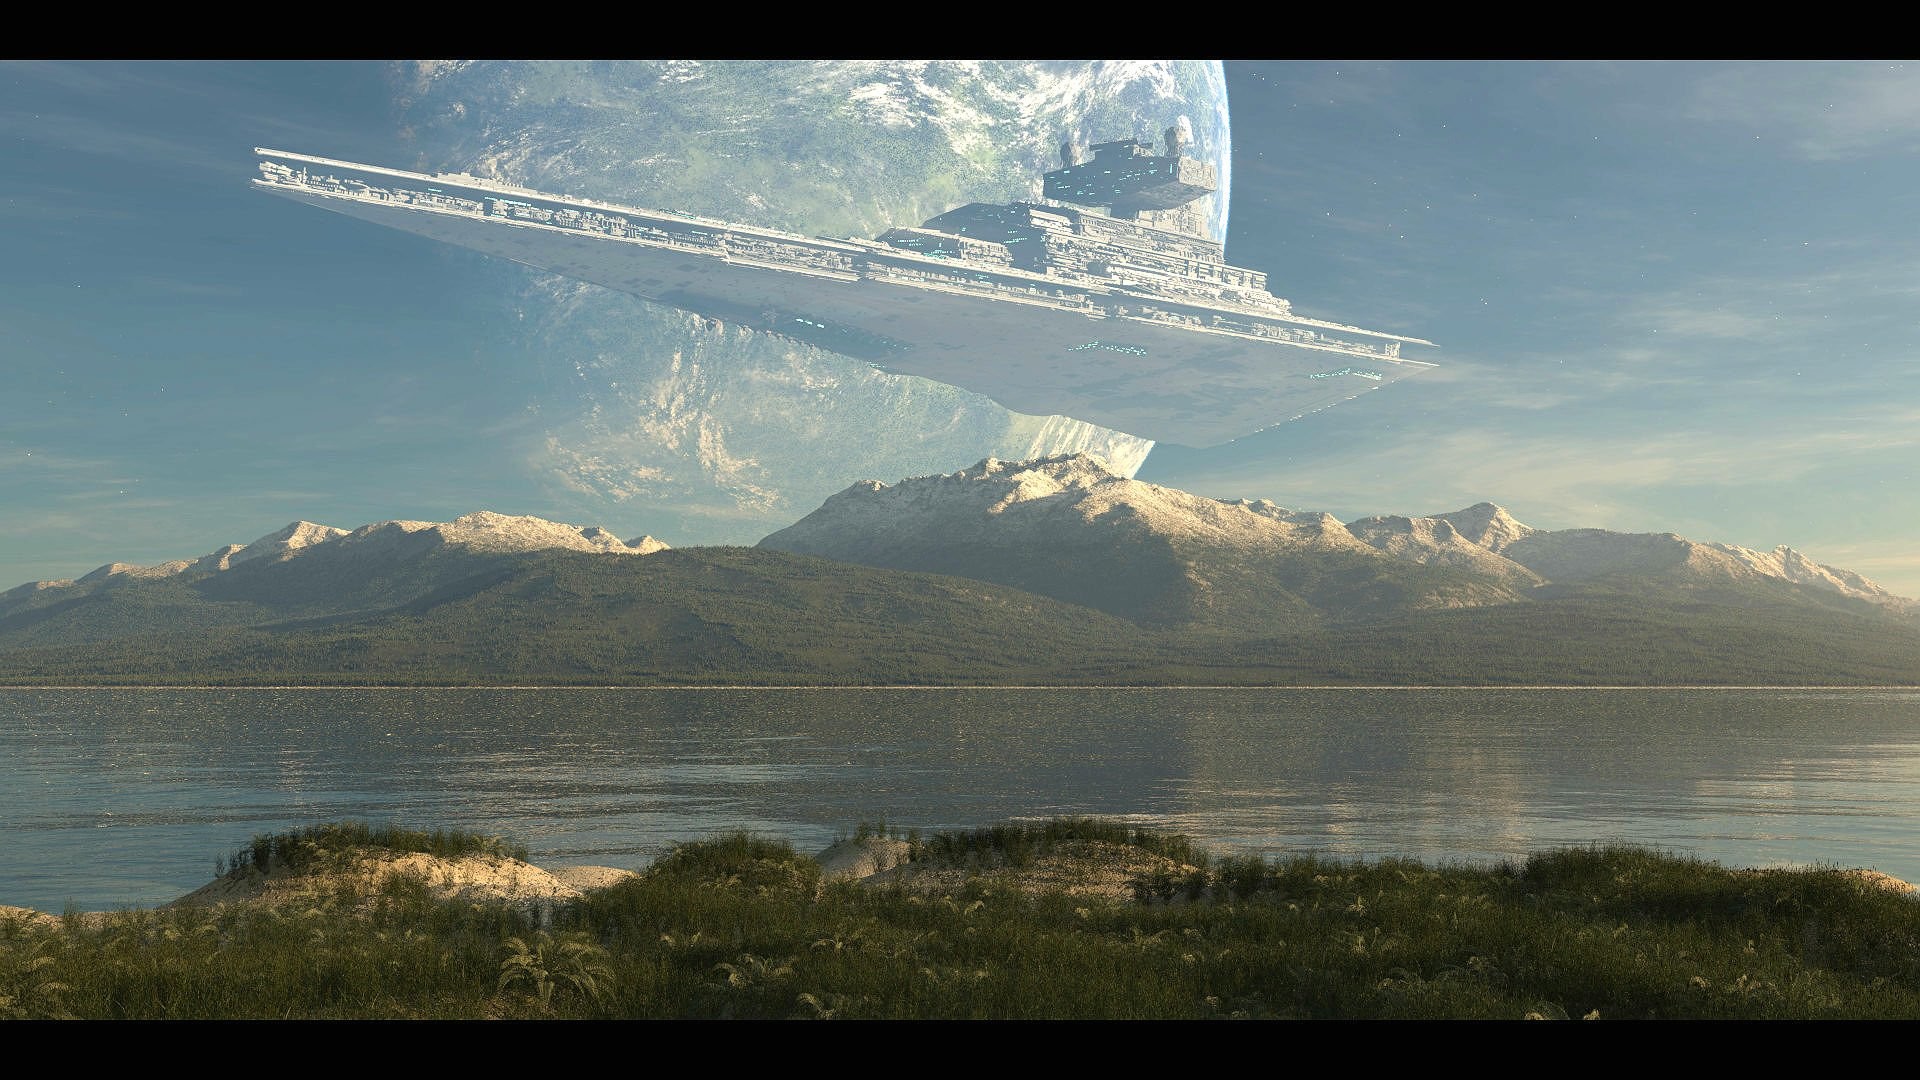 Star Wars Landscape Wallpaper Image